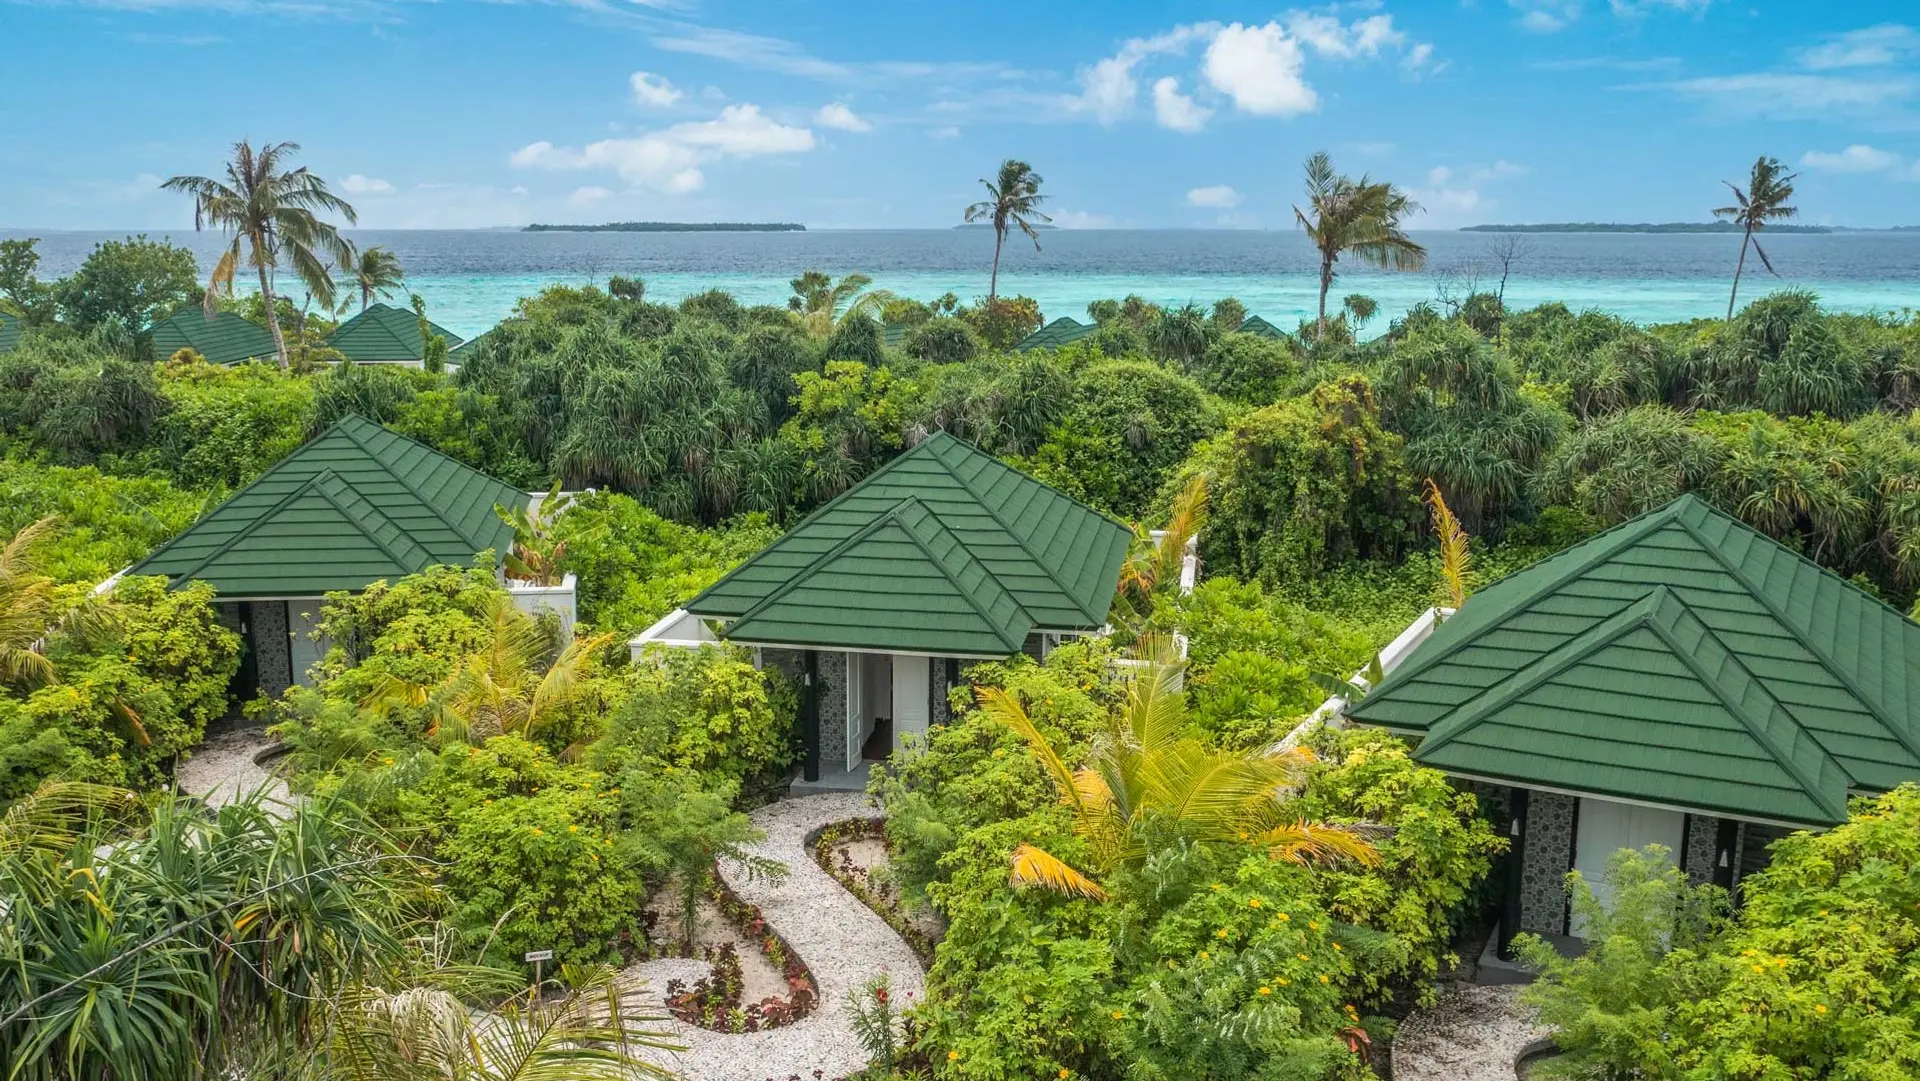 Hotel review Style' - Siyam World Maldives - 0